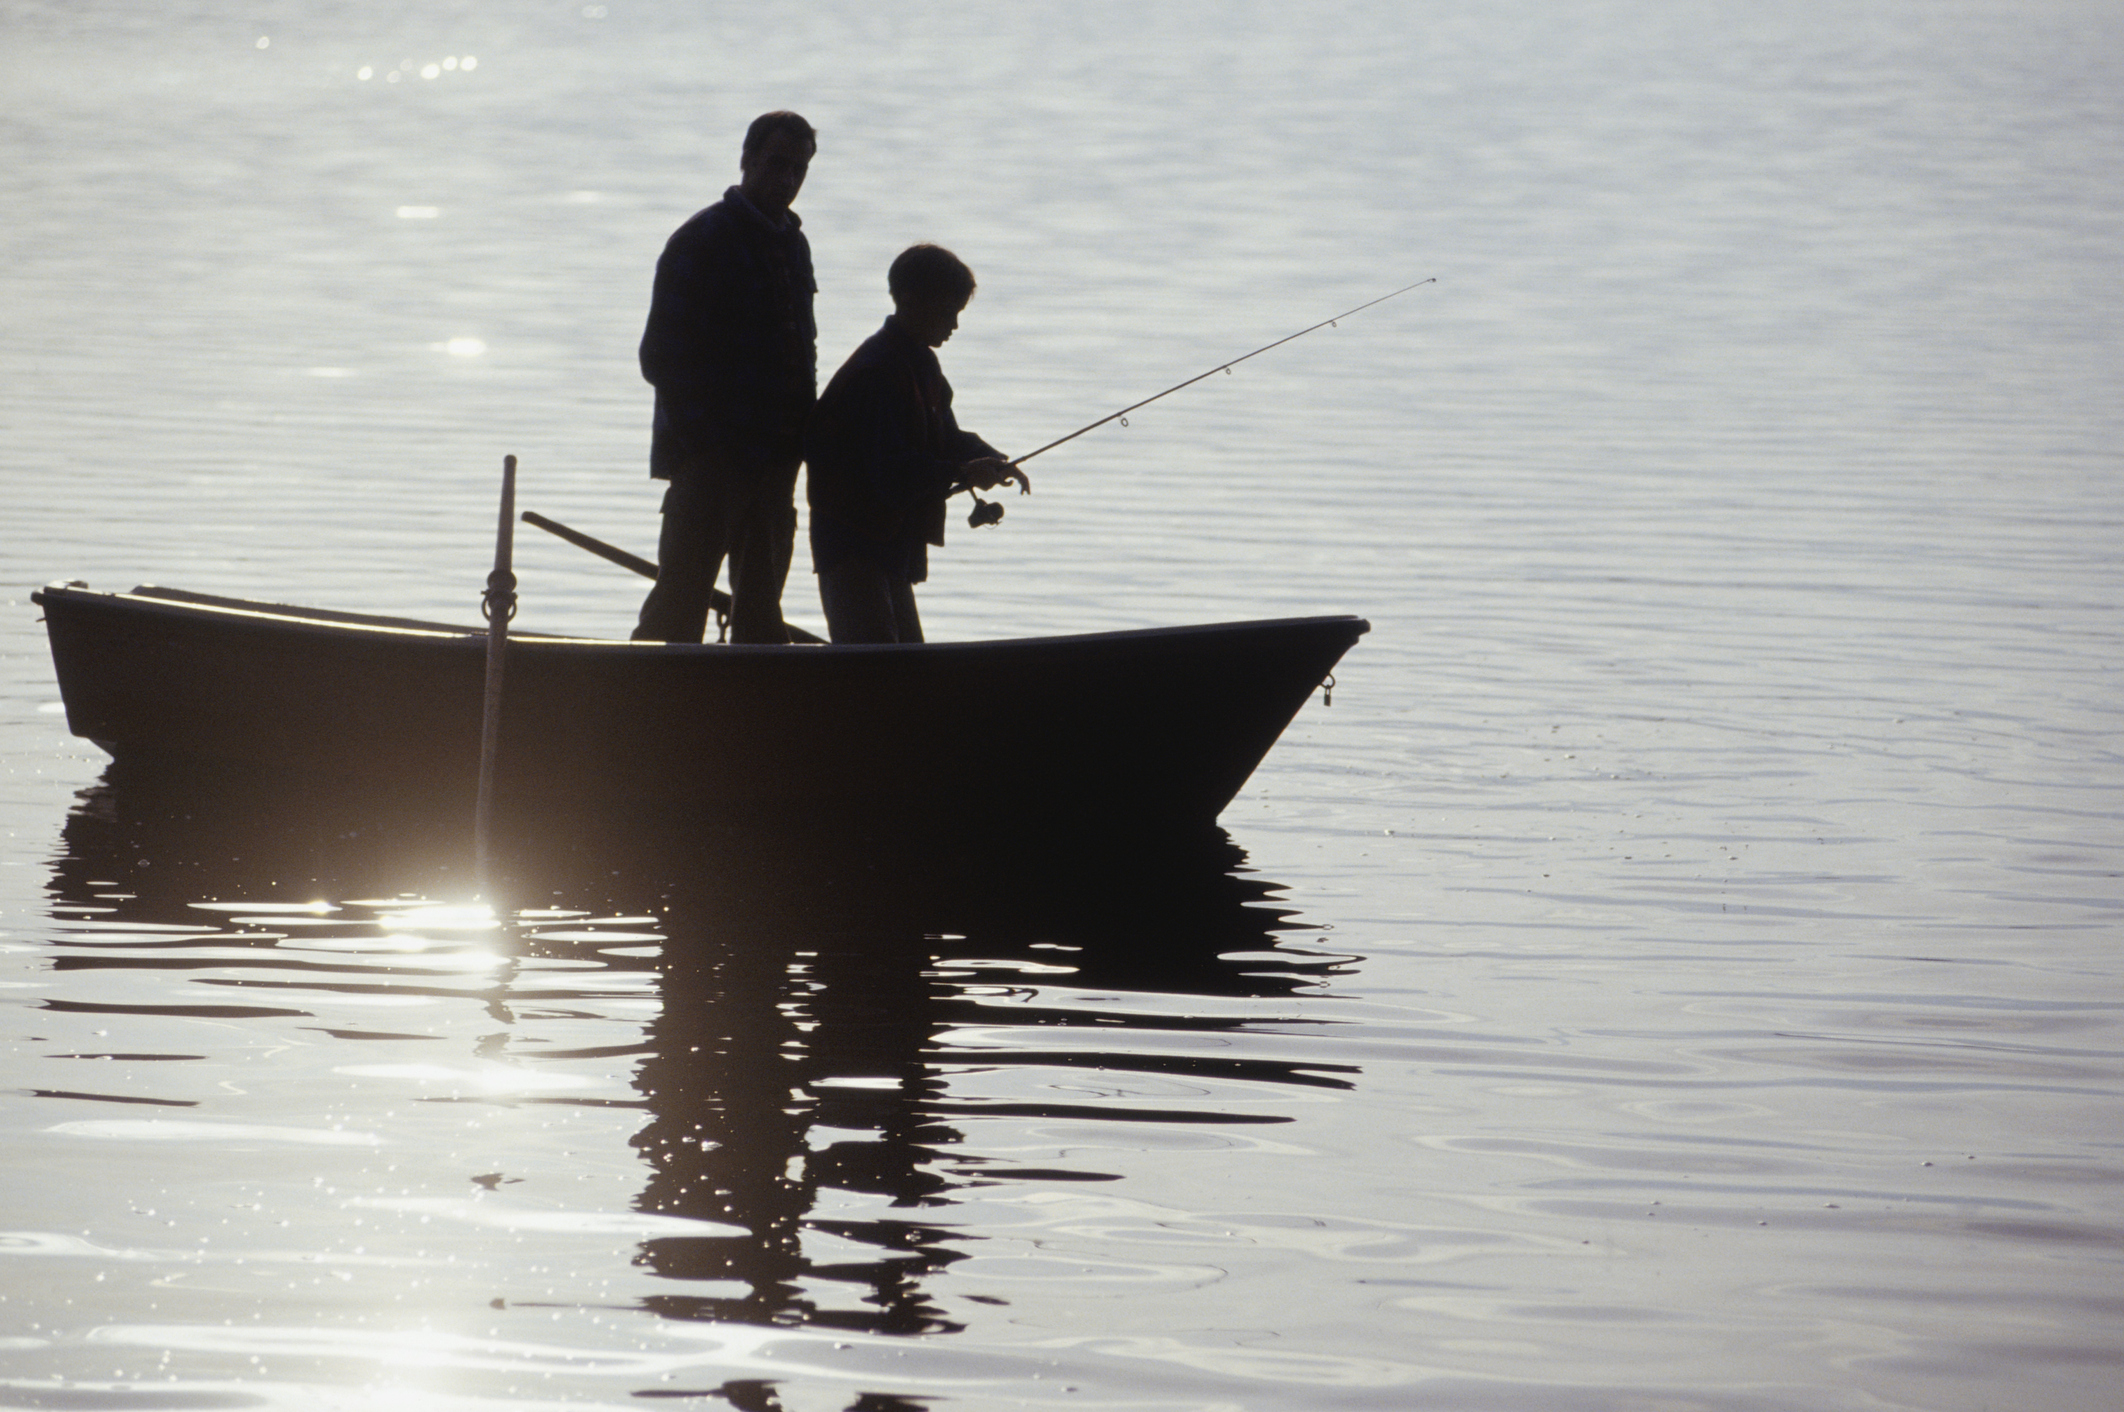 2 men fishing in a boat